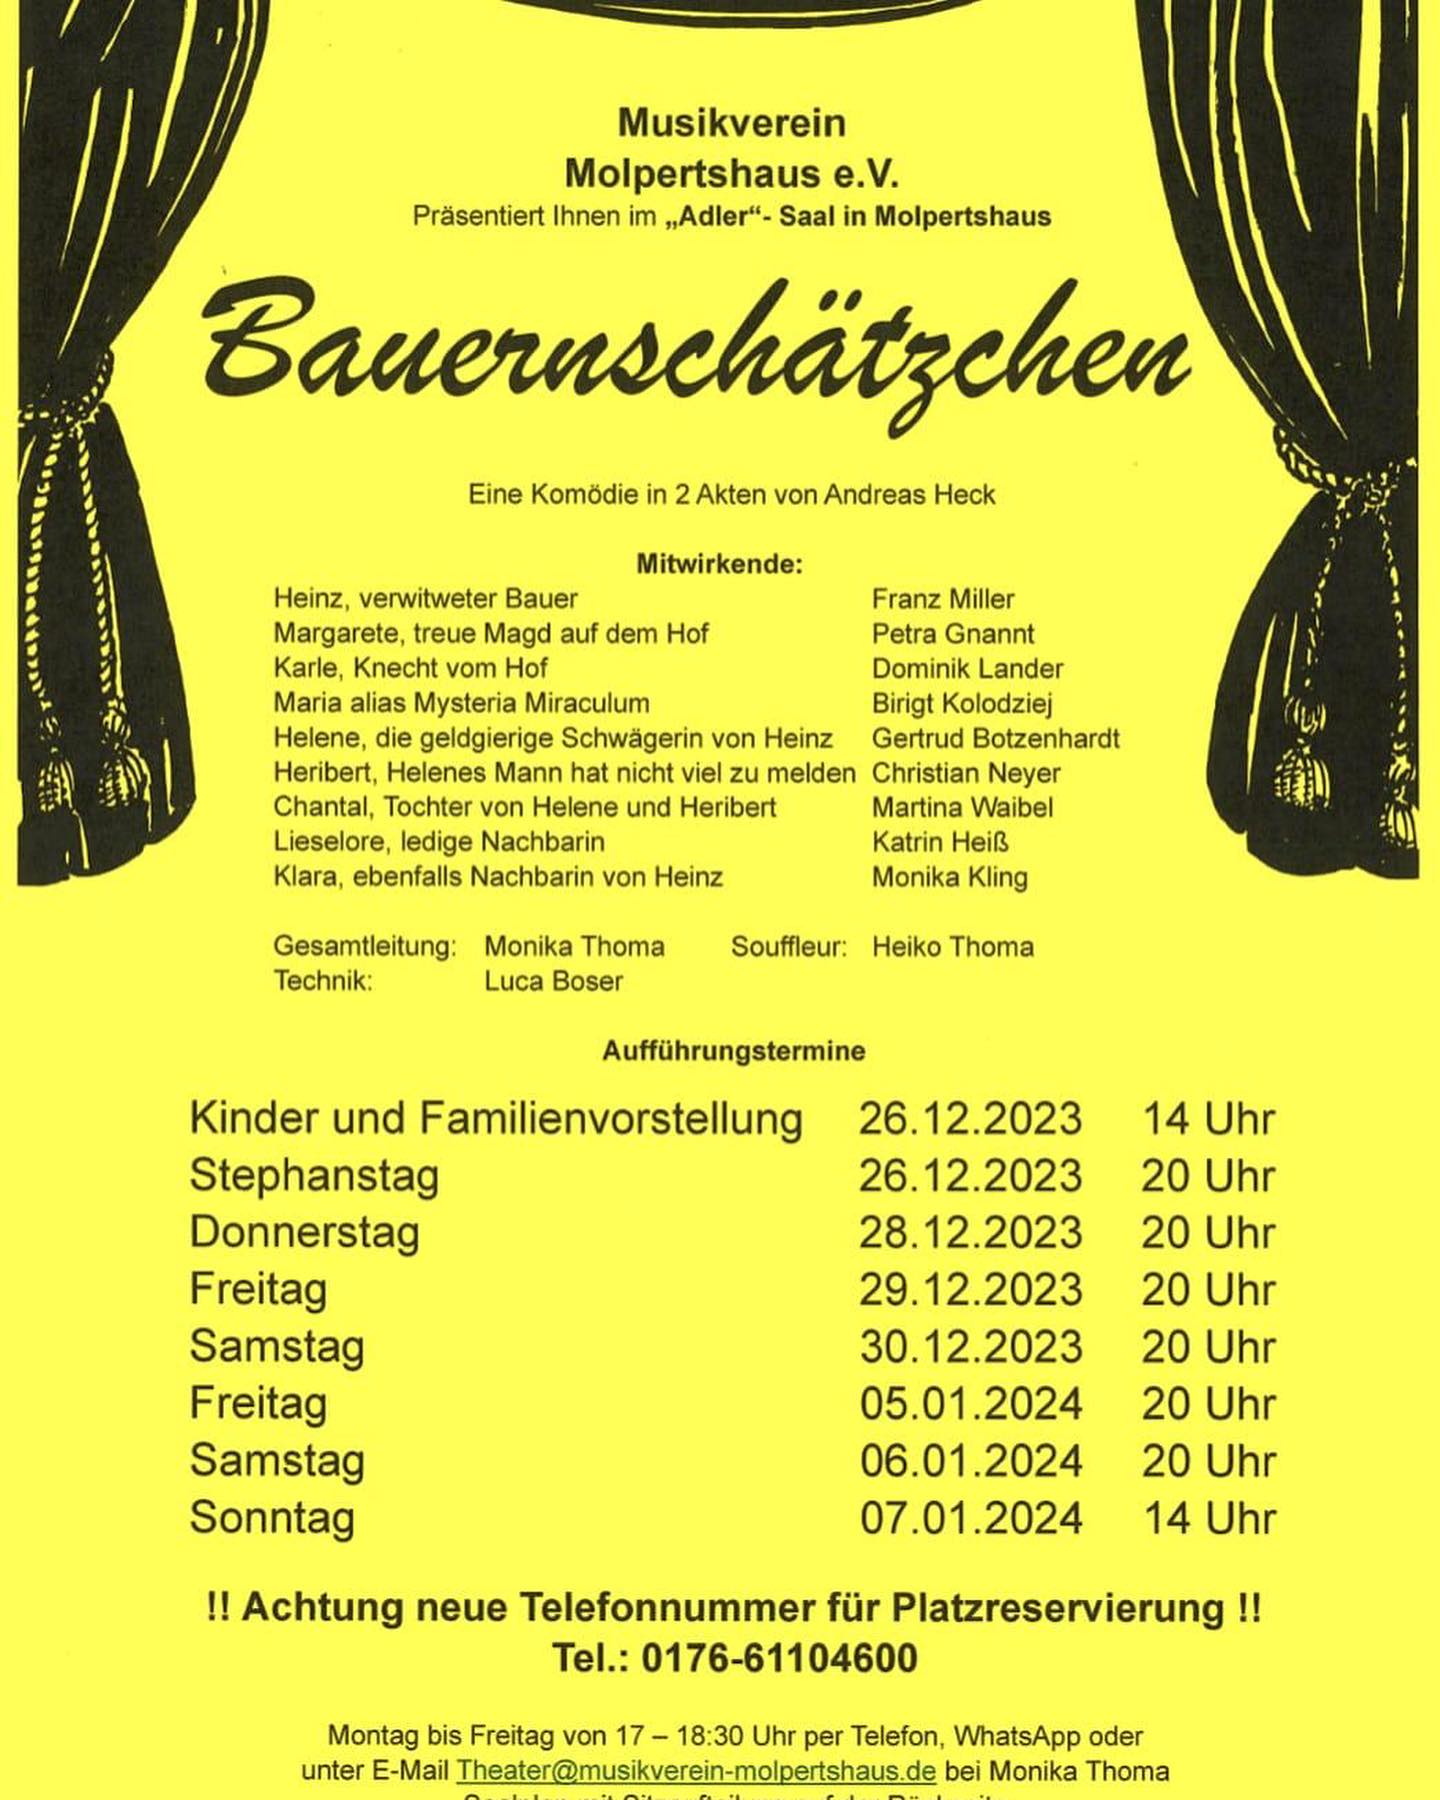 Plakat der Thetatergruppe des MV Molpertshaus zu Bauernschaetzchen